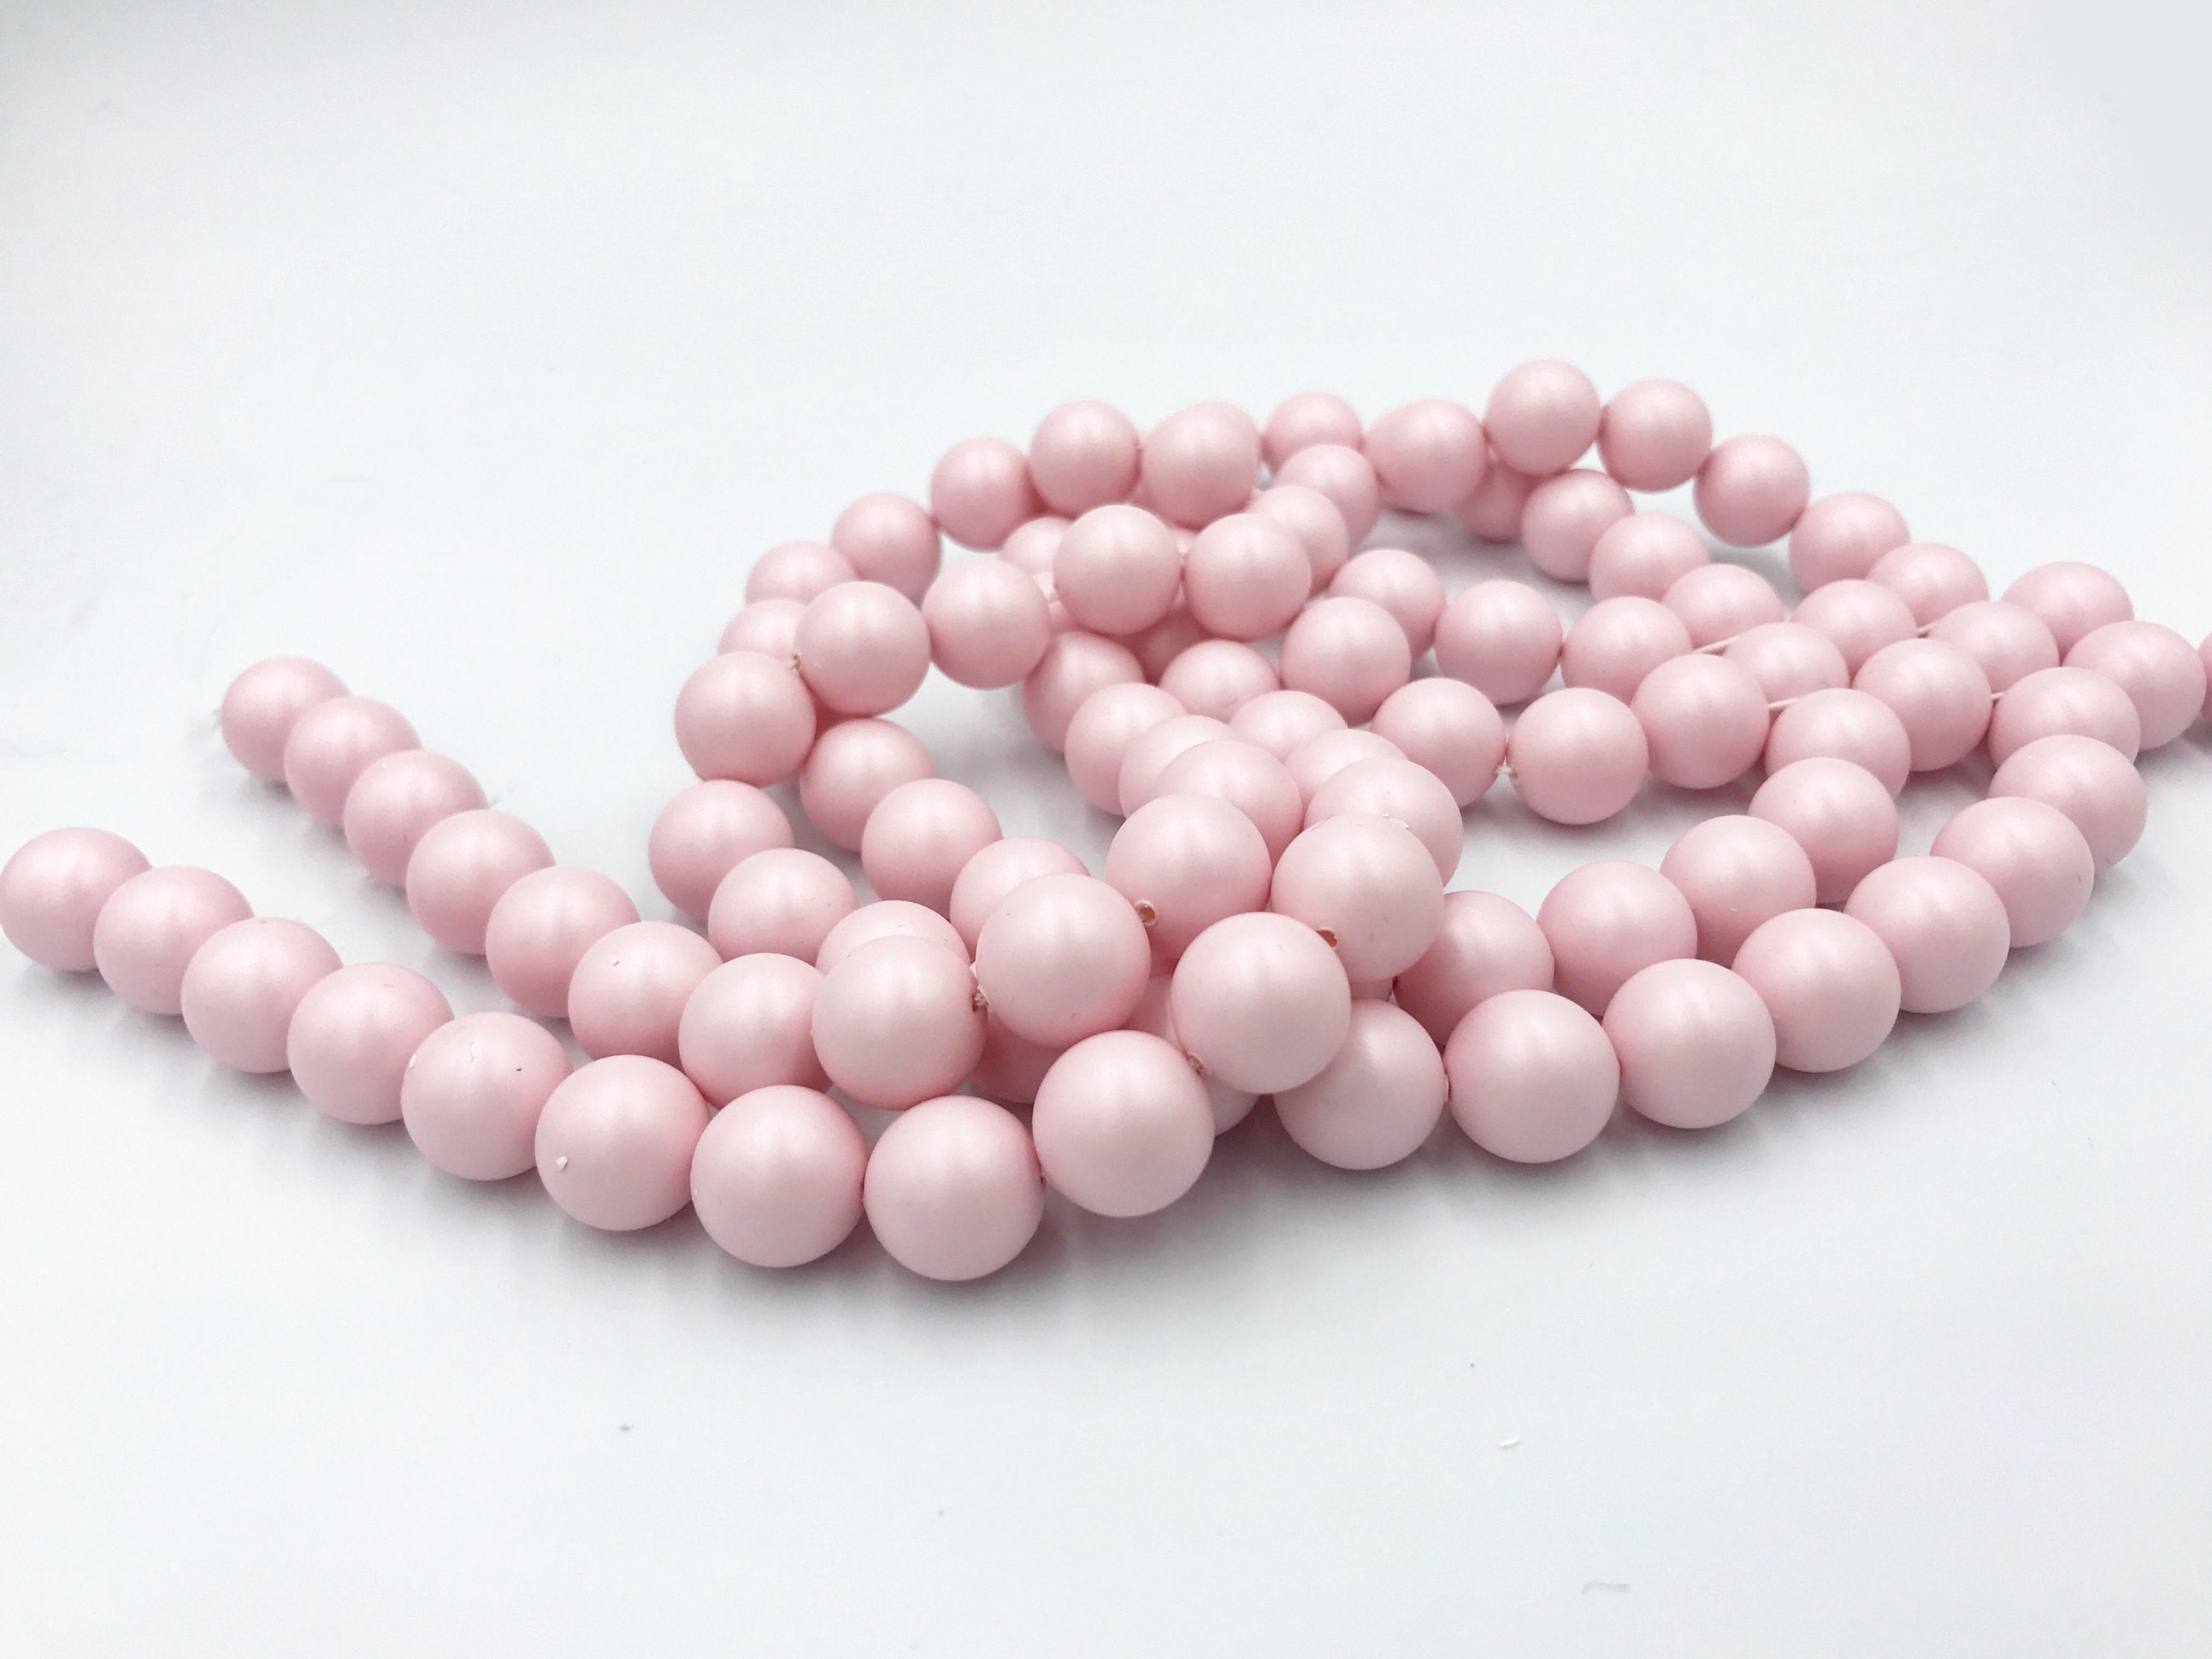 1/5/10pcs, 8mm/12mm Genuine Swarovski® 5811  Crystal Pearl in Pastel Pink